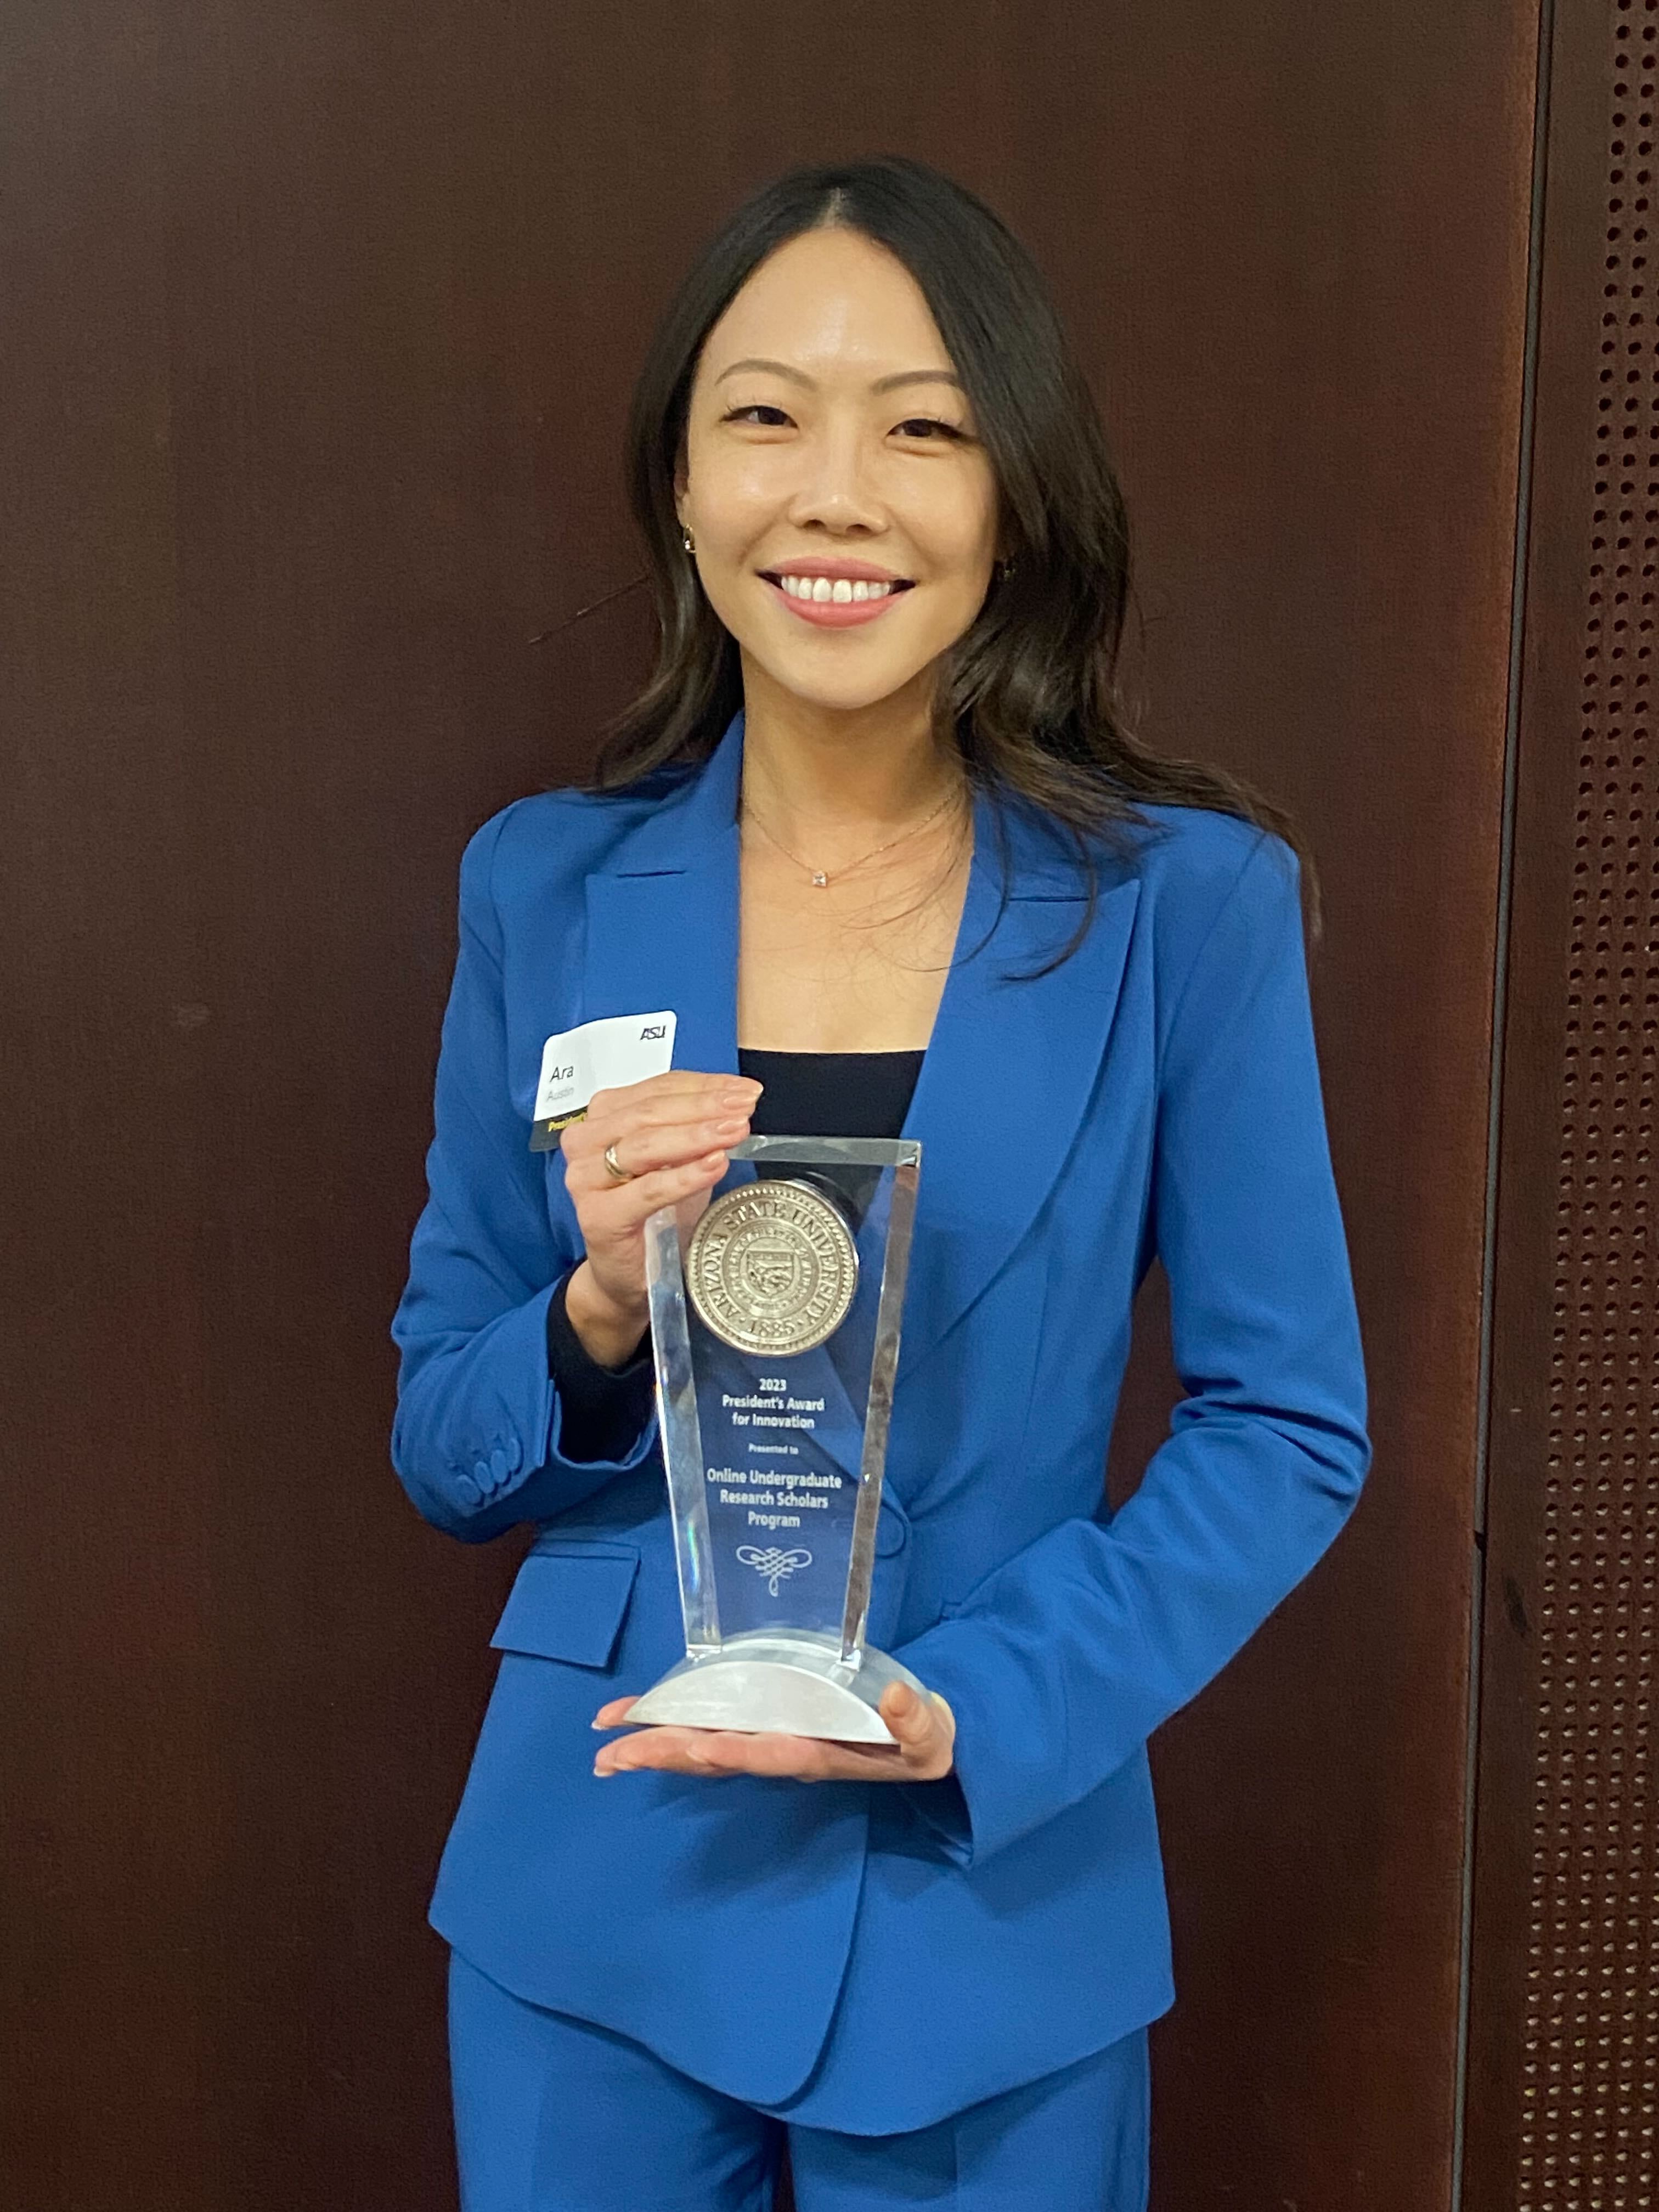 Ara Austin holding the President's Award for Innovation.